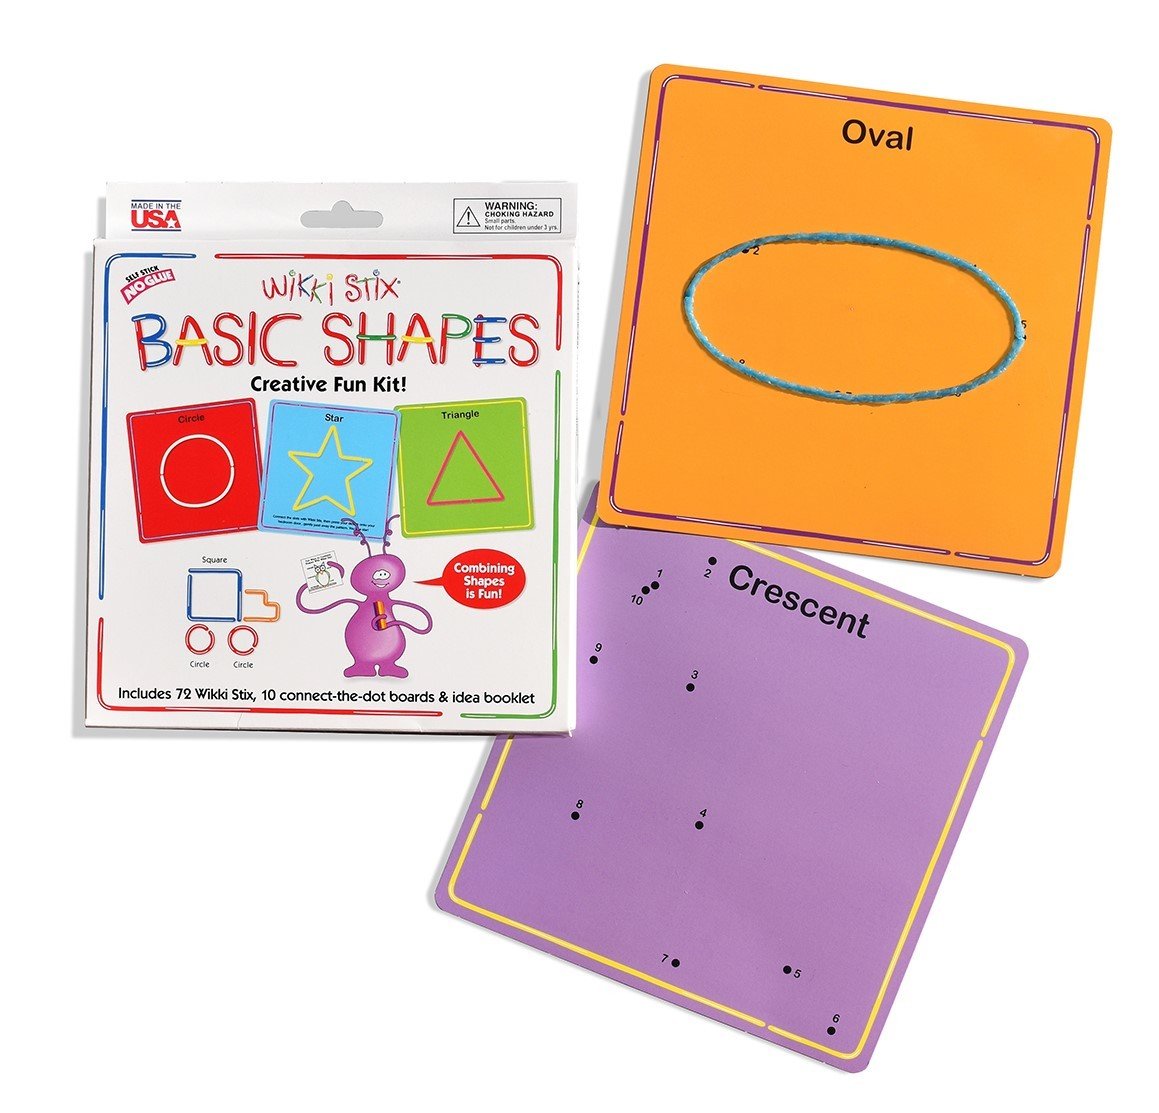 Wikki_Stix_Basic_shapes_creative_Fun_kit_cards